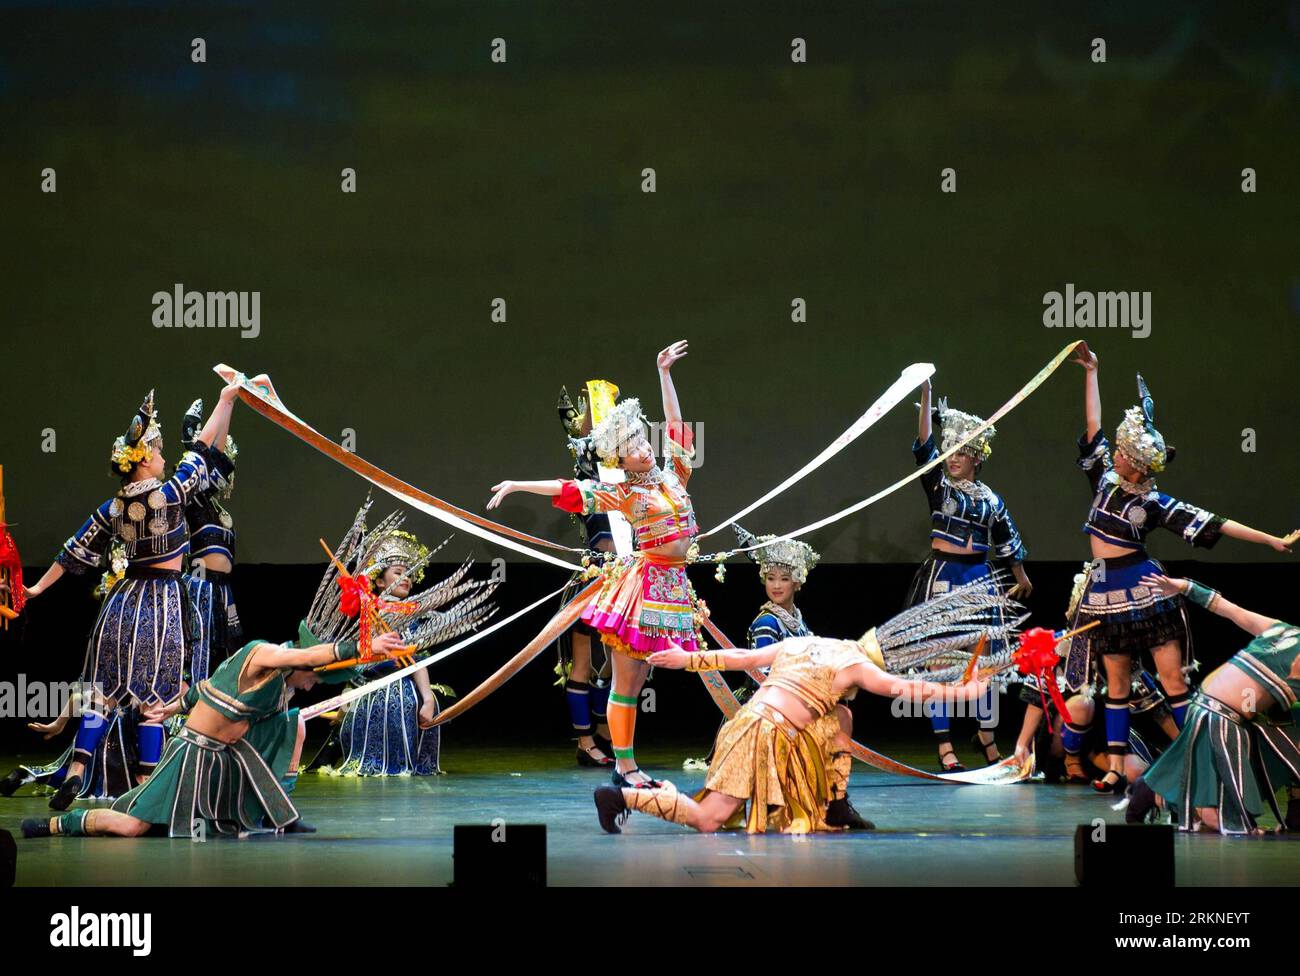 Bildnummer : 57107636 Datum : 25.02.2012 Copyright : imago/Xinhua (120225) -- MELBOURNE, 25 février 2012 (Xinhua) -- des danseurs de la compagnie de chant et de danse folklorique du sud-ouest de la Chine, la province du Guizhou, se produisent à Melbourne, en Australie, le 25 février 2012. Près de 2 000 spectateurs ont regardé l'émission. (Xinhua/Bai Xue) (dzl) AUSTRALIE-CHINESE-FOLK DANSE-PERFORMANCE PUBLICATIONxNOTxINxCHN Kultur Tanz Aktion x0x xsk 2012 quer 57107636 Date 25 02 2012 Copyright Imago XINHUA Melbourne février 25 2012 des danseurs XINHUA de la Folk Song and Dance Company du sud-ouest de la Chine S Guizhou province se produisent à Melbourne Aust Banque D'Images